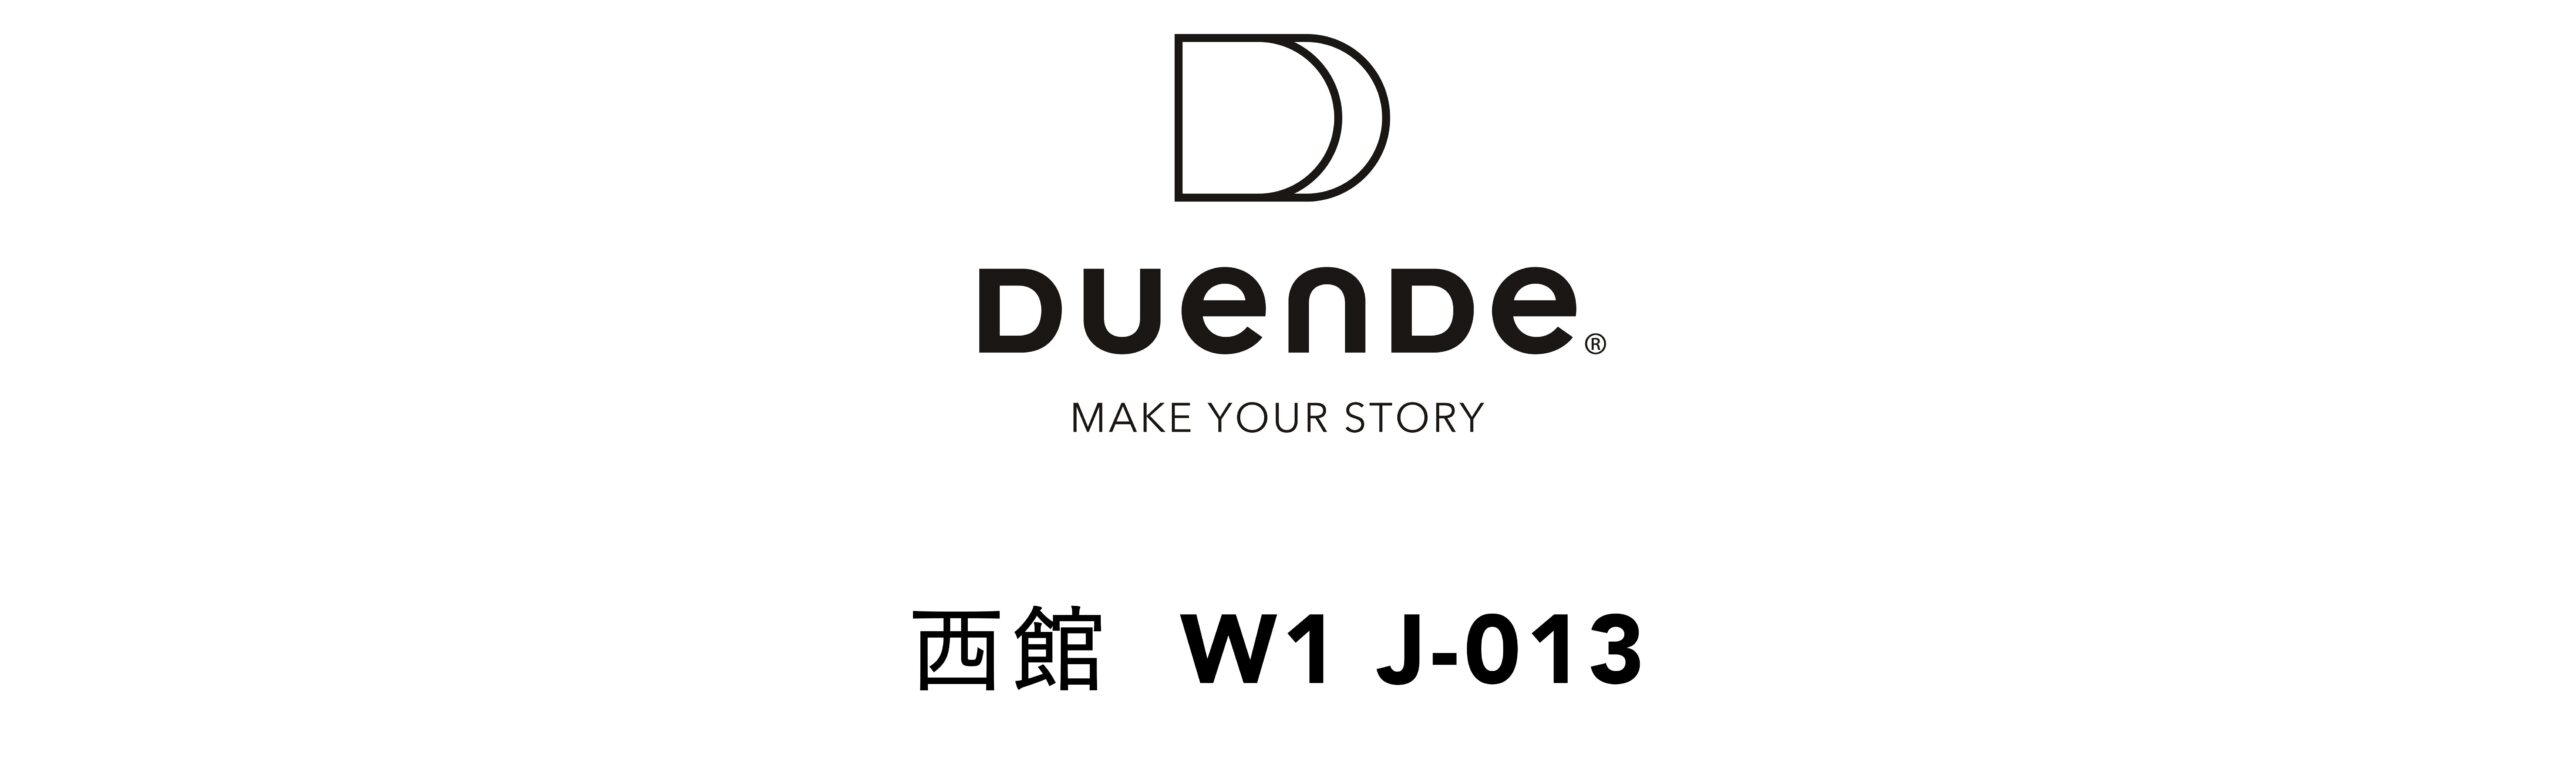 duende5